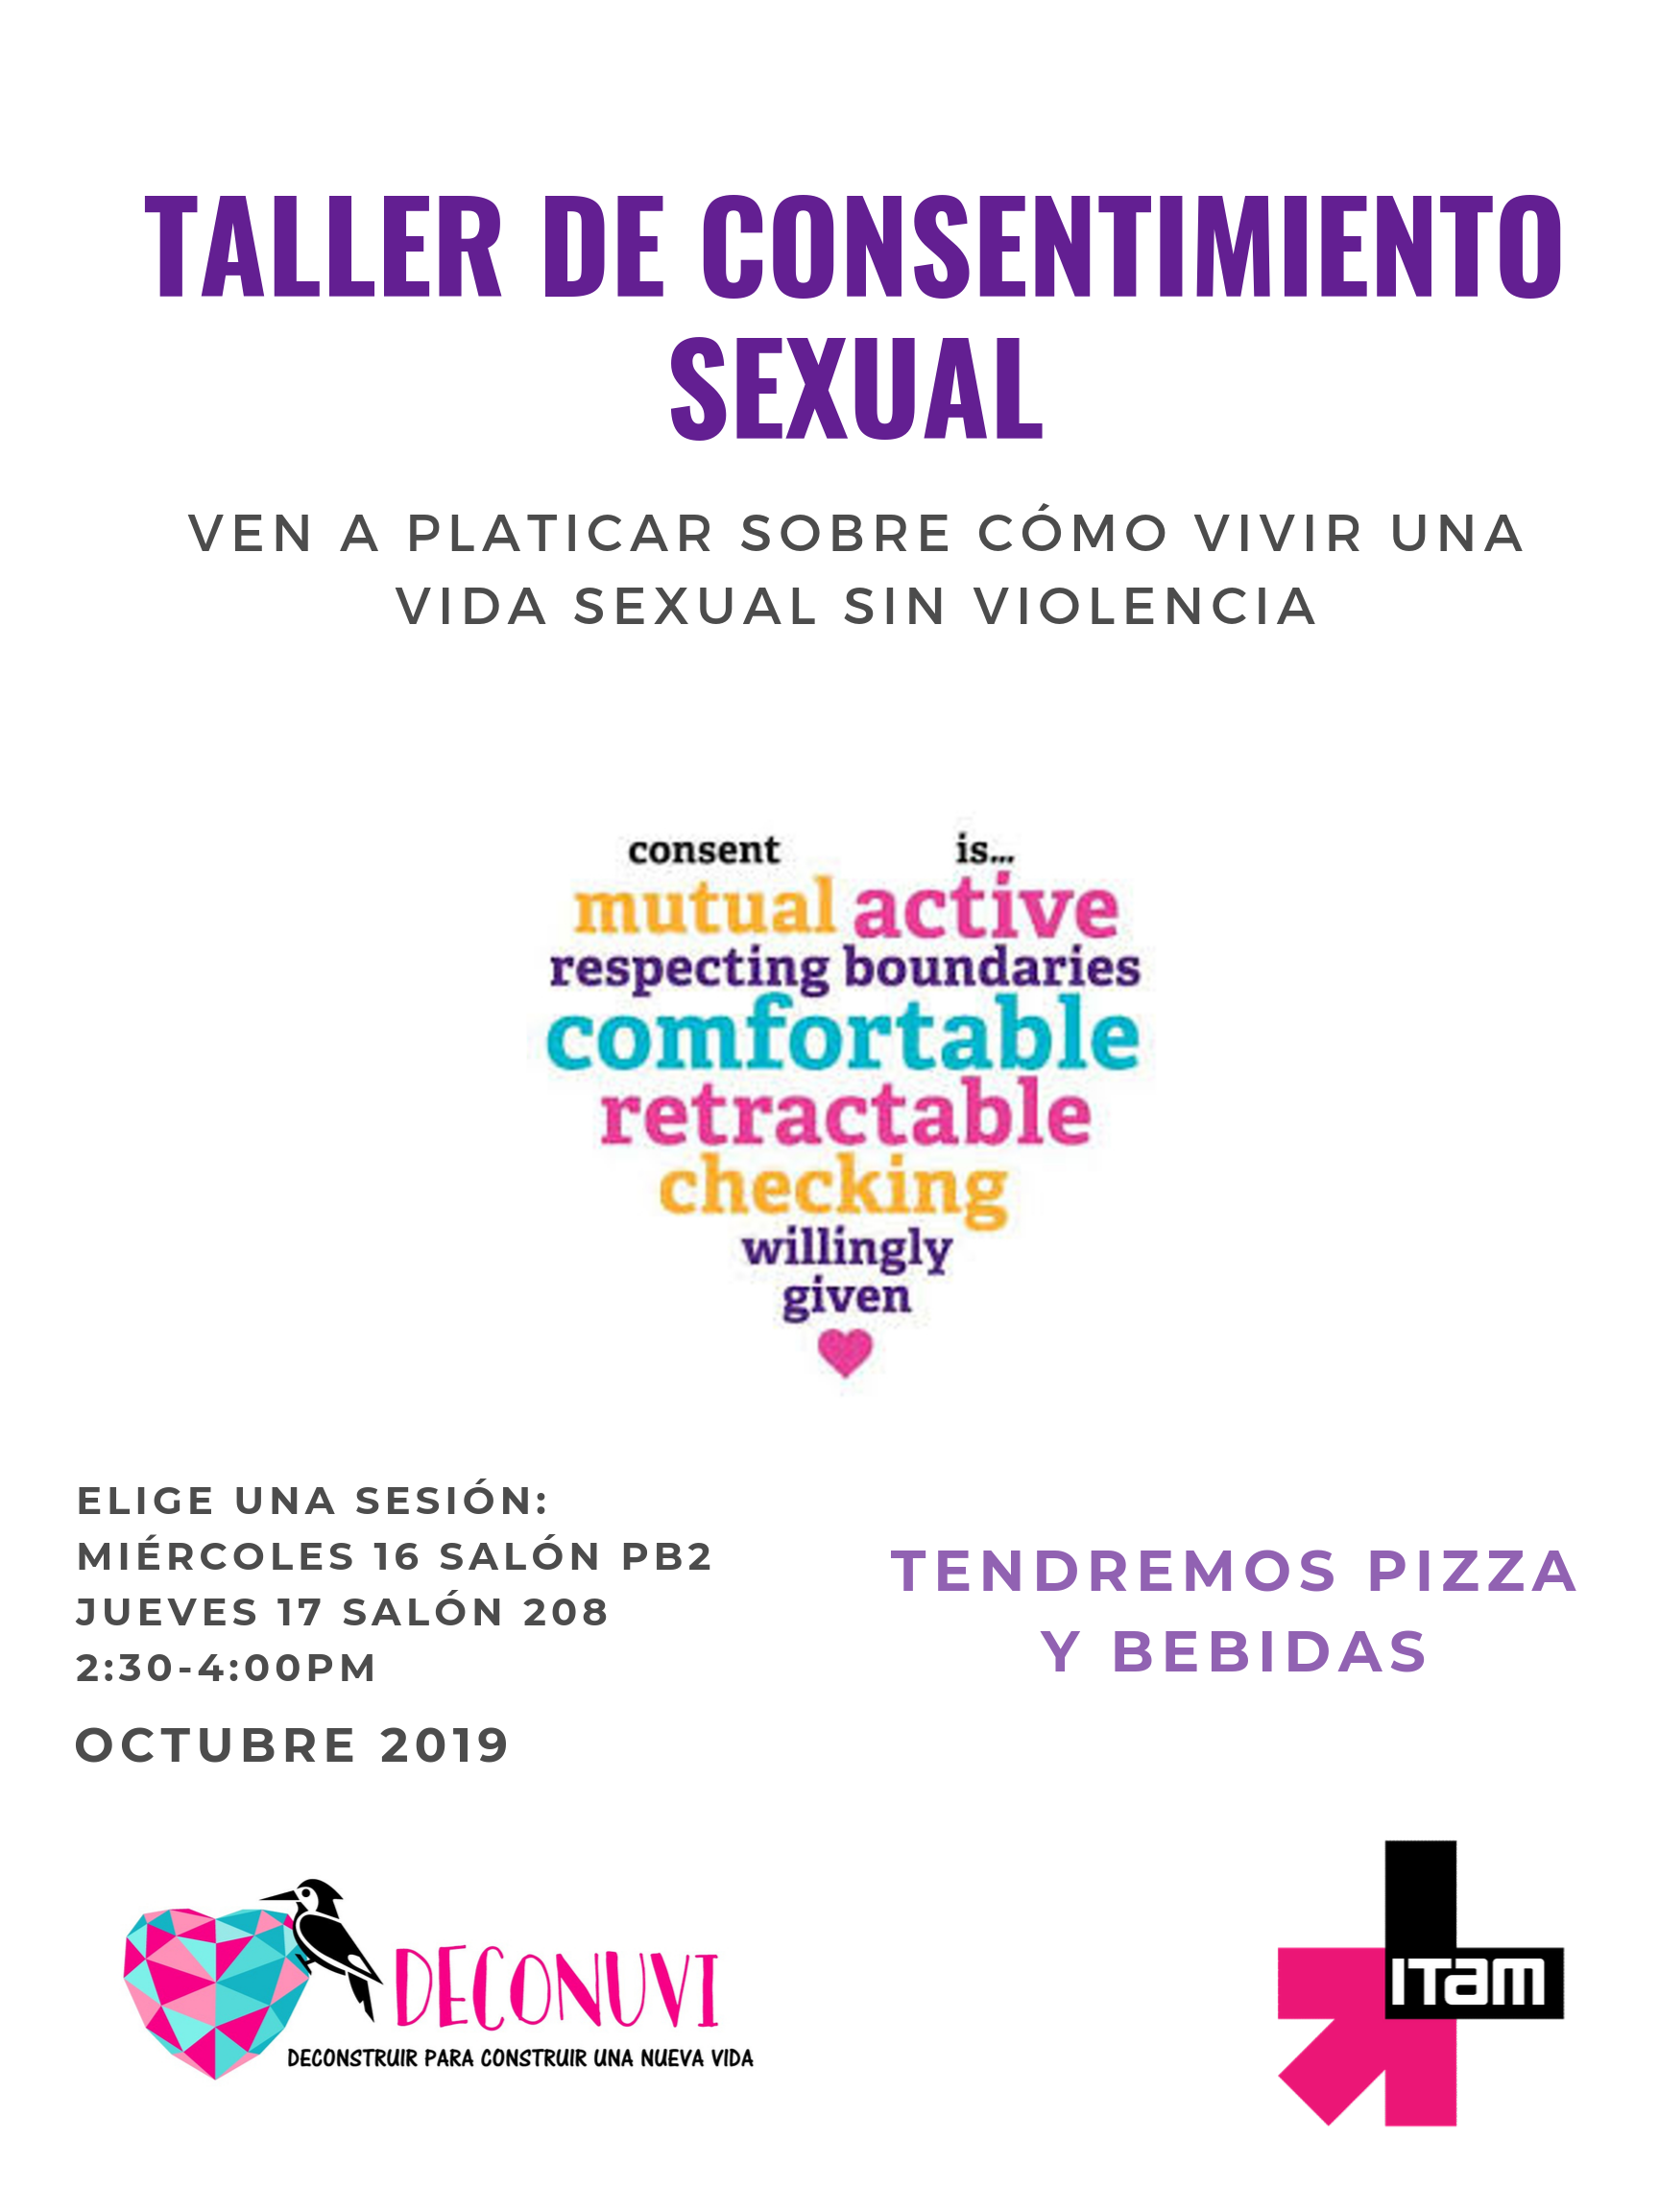 Taller De Consentimiento Sexual Sesión 2 Eventos Y Noticias